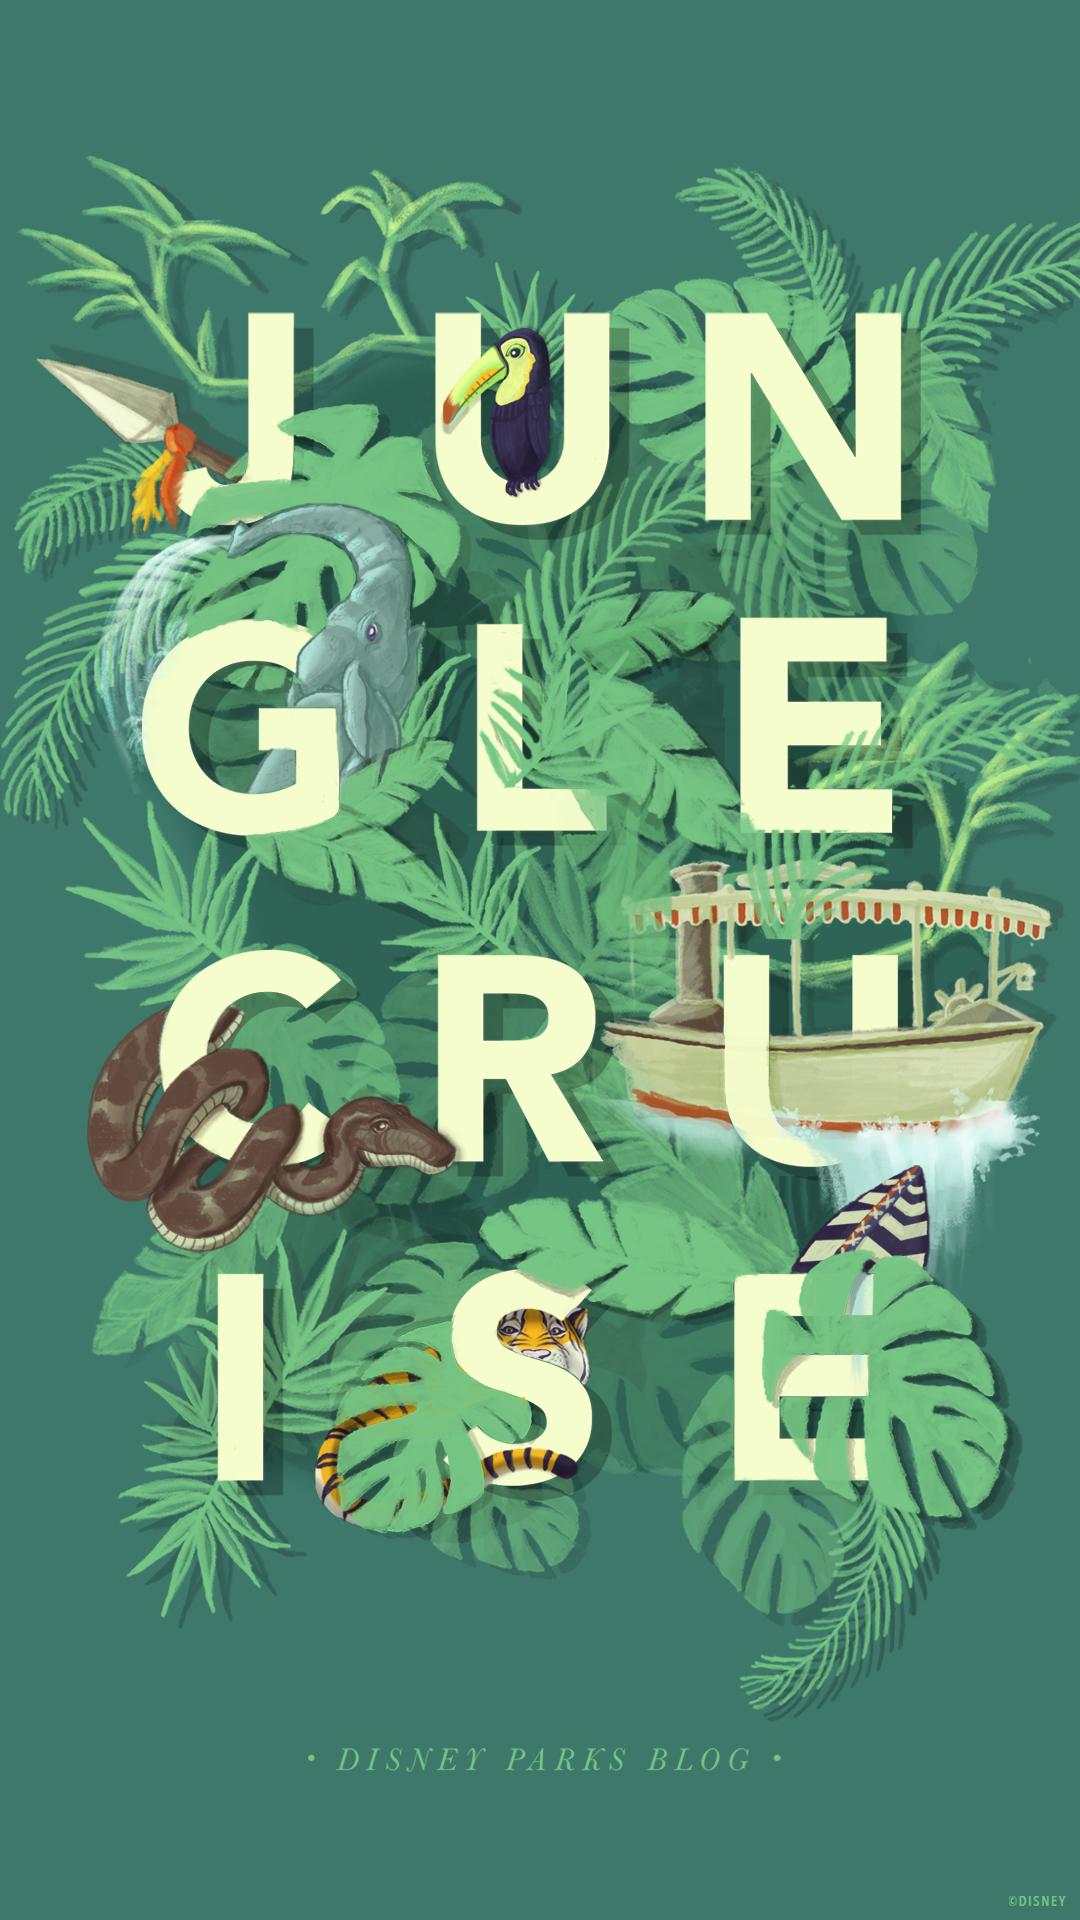 45th Anniversary Wallpaper: The Jungle Cruise